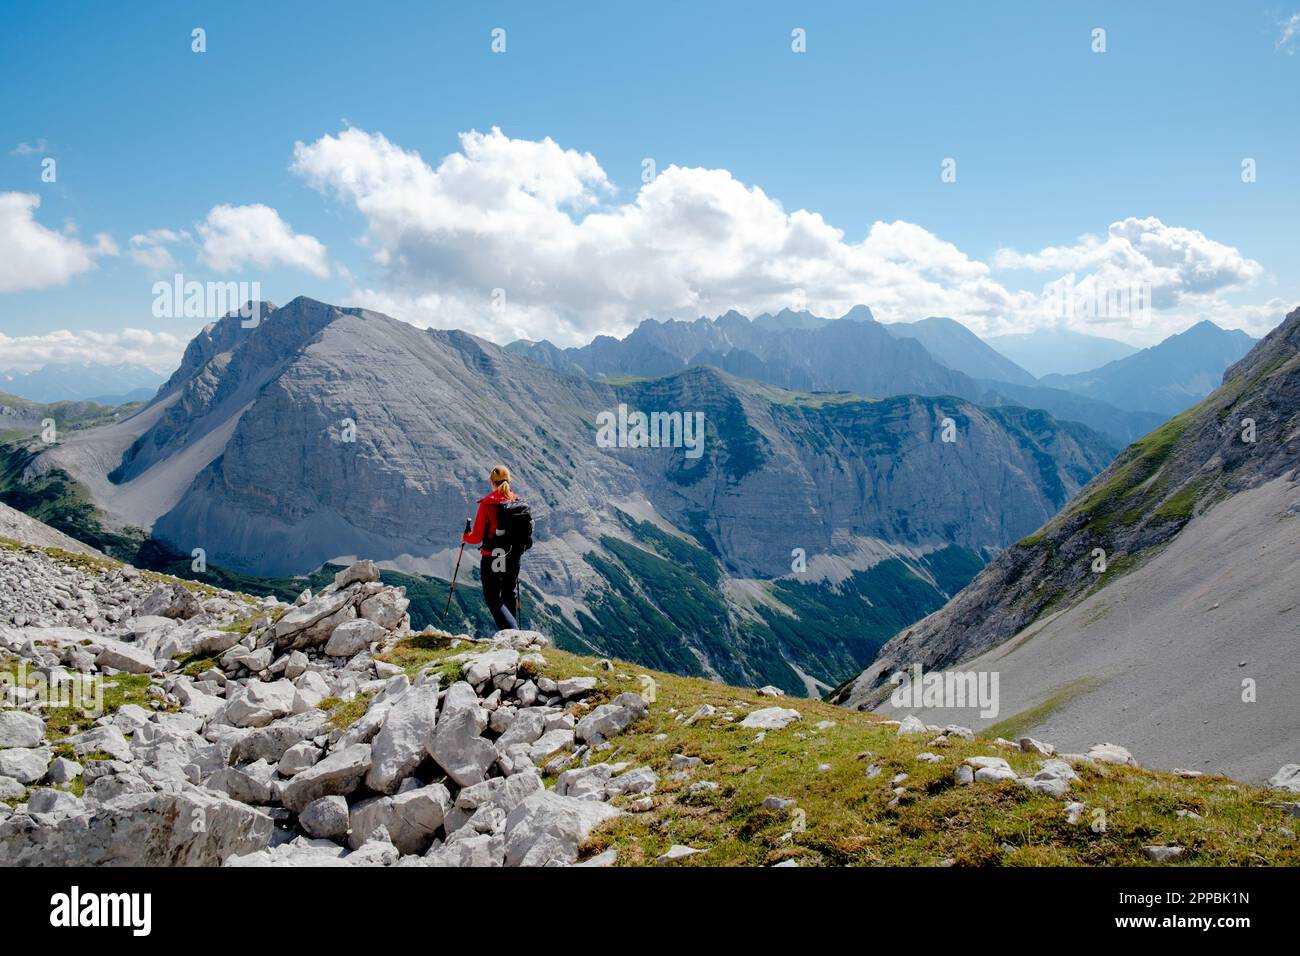 Bergwanderung im Karwendelgebirge mit einzigartiger Aussicht Stock Photo